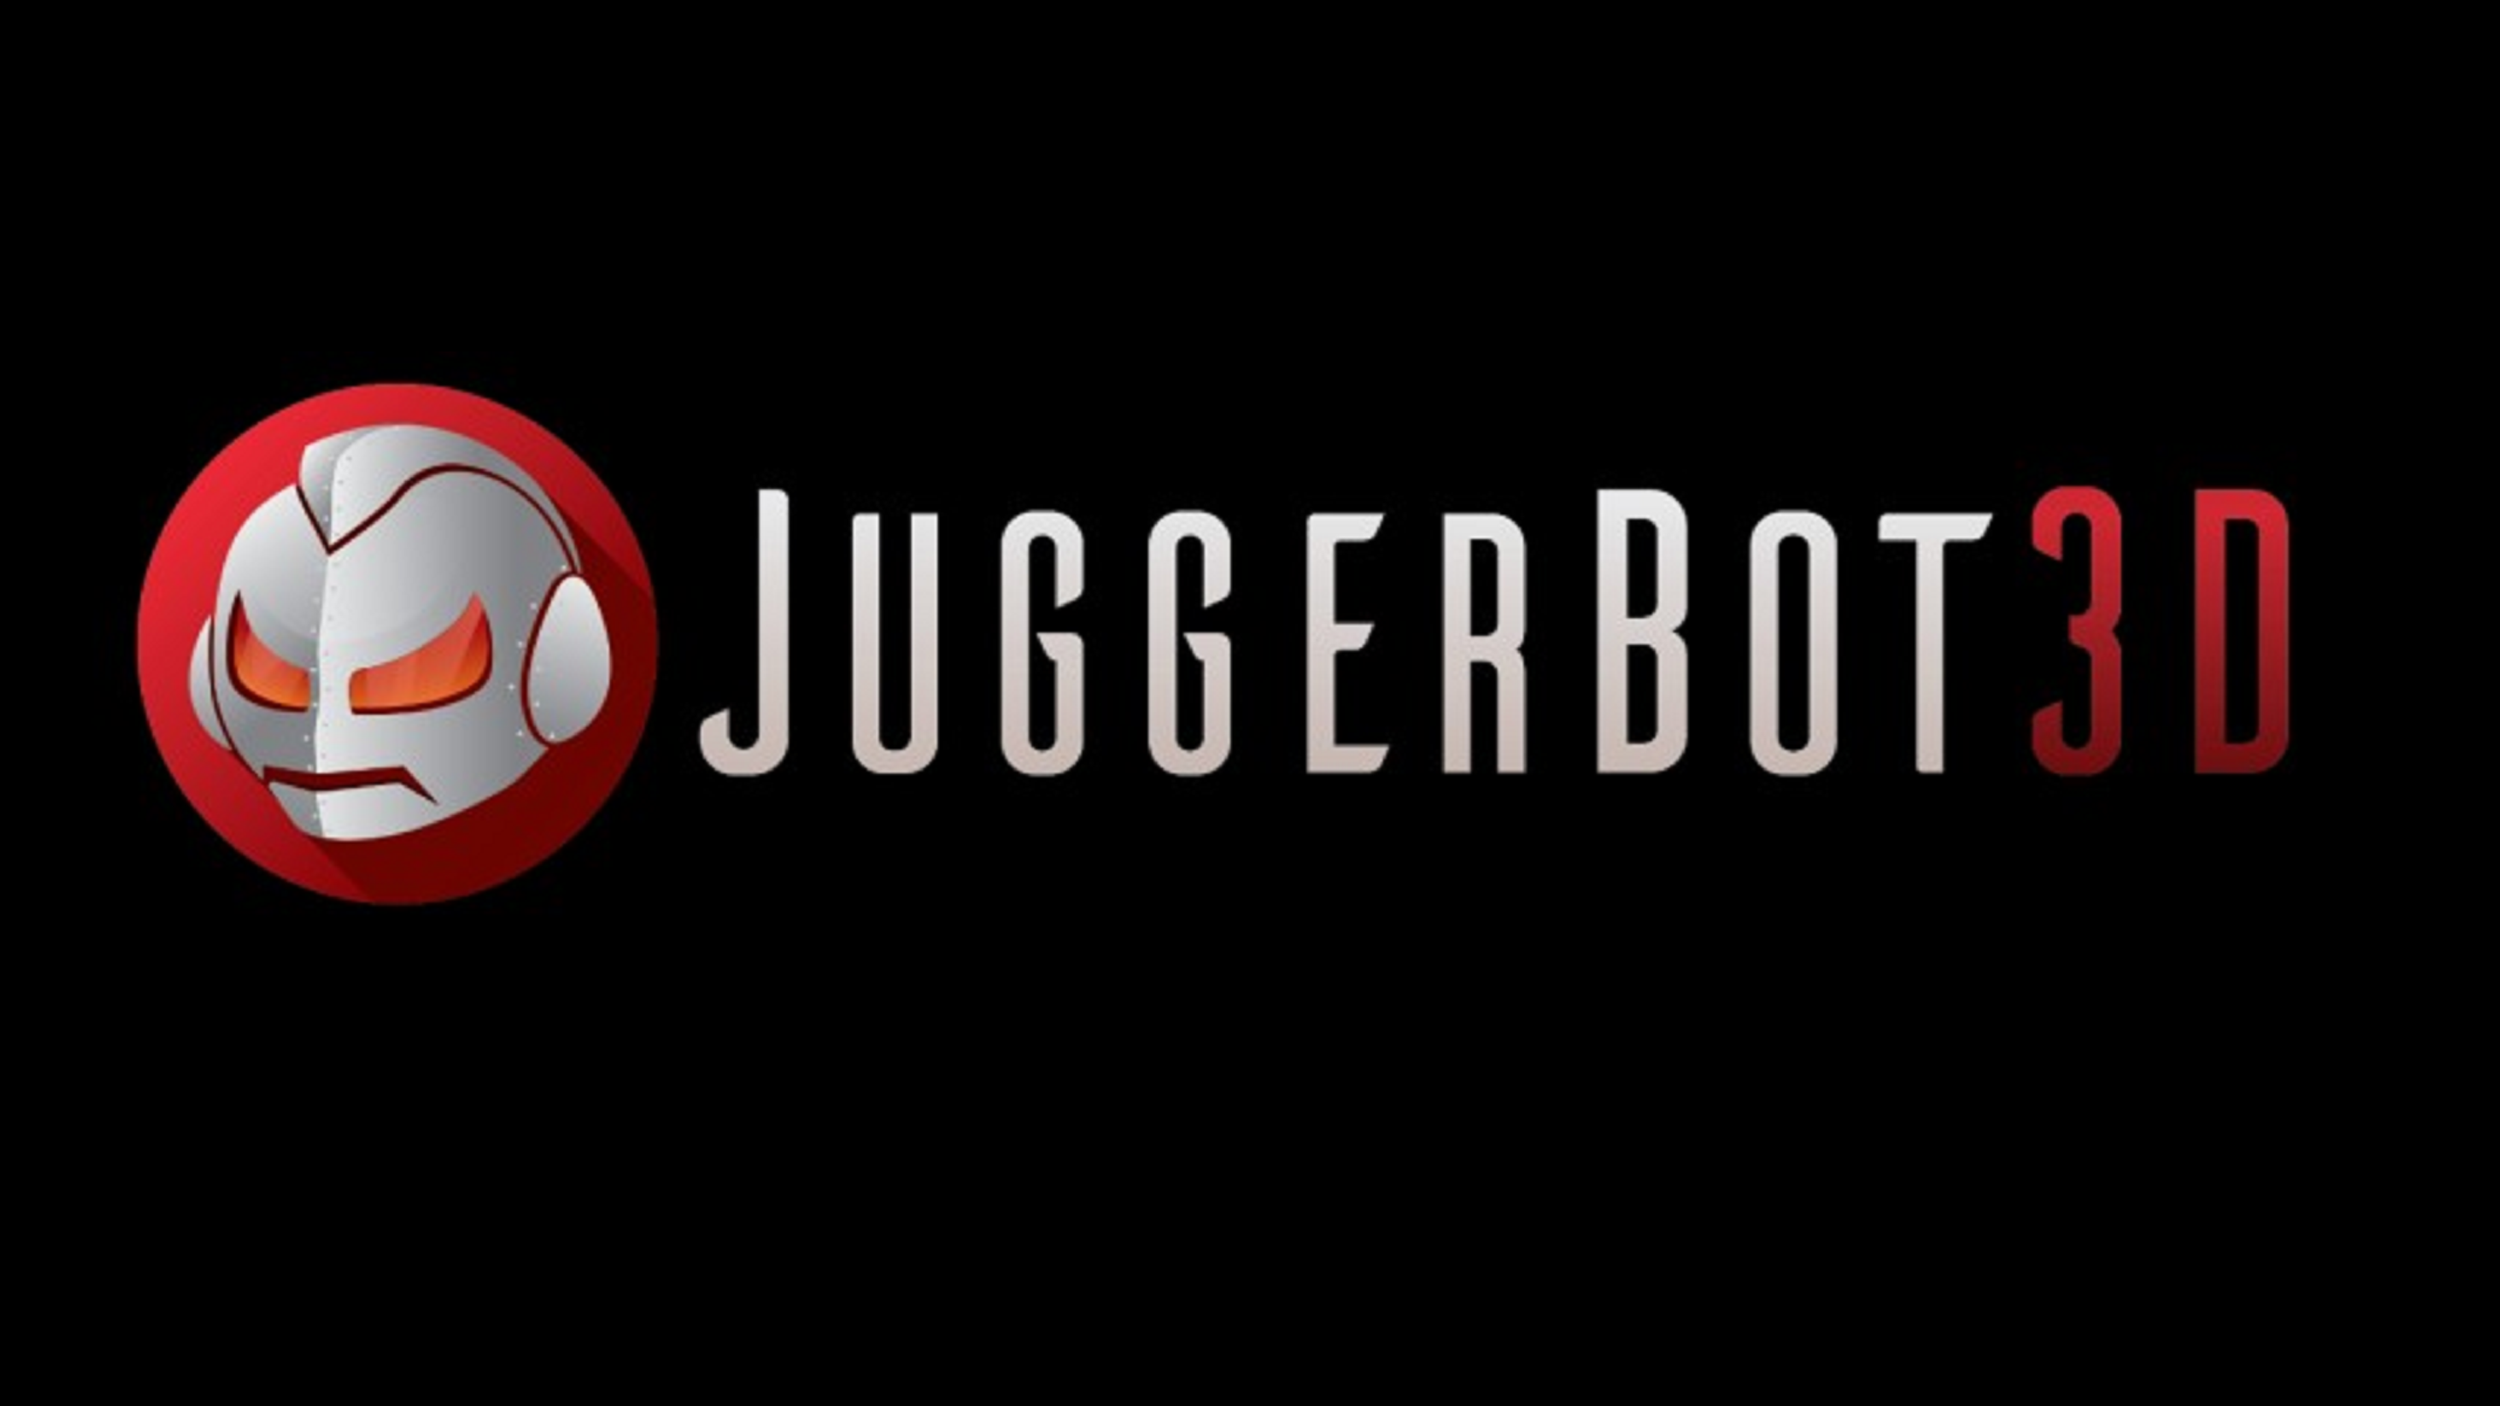 Juggerbot 3D.png